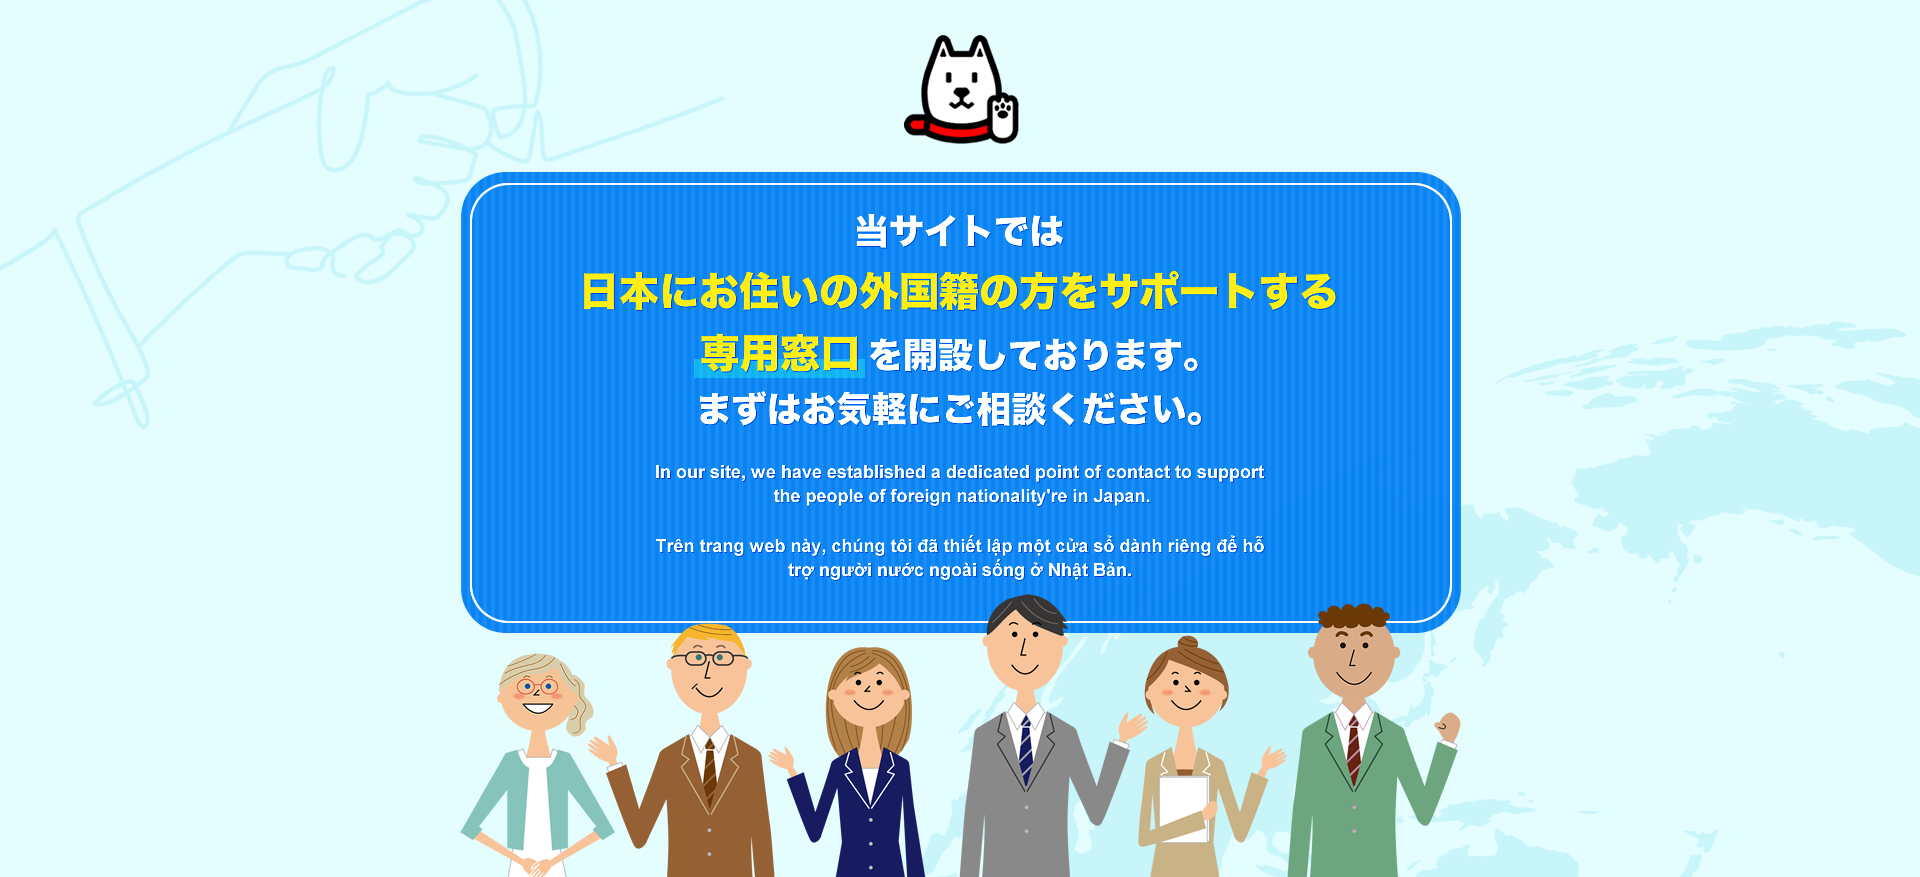 当サイトでは日本にお住いの外国籍の方をサポートする専用窓口を開設しております。まずはお気軽にご相談ください。